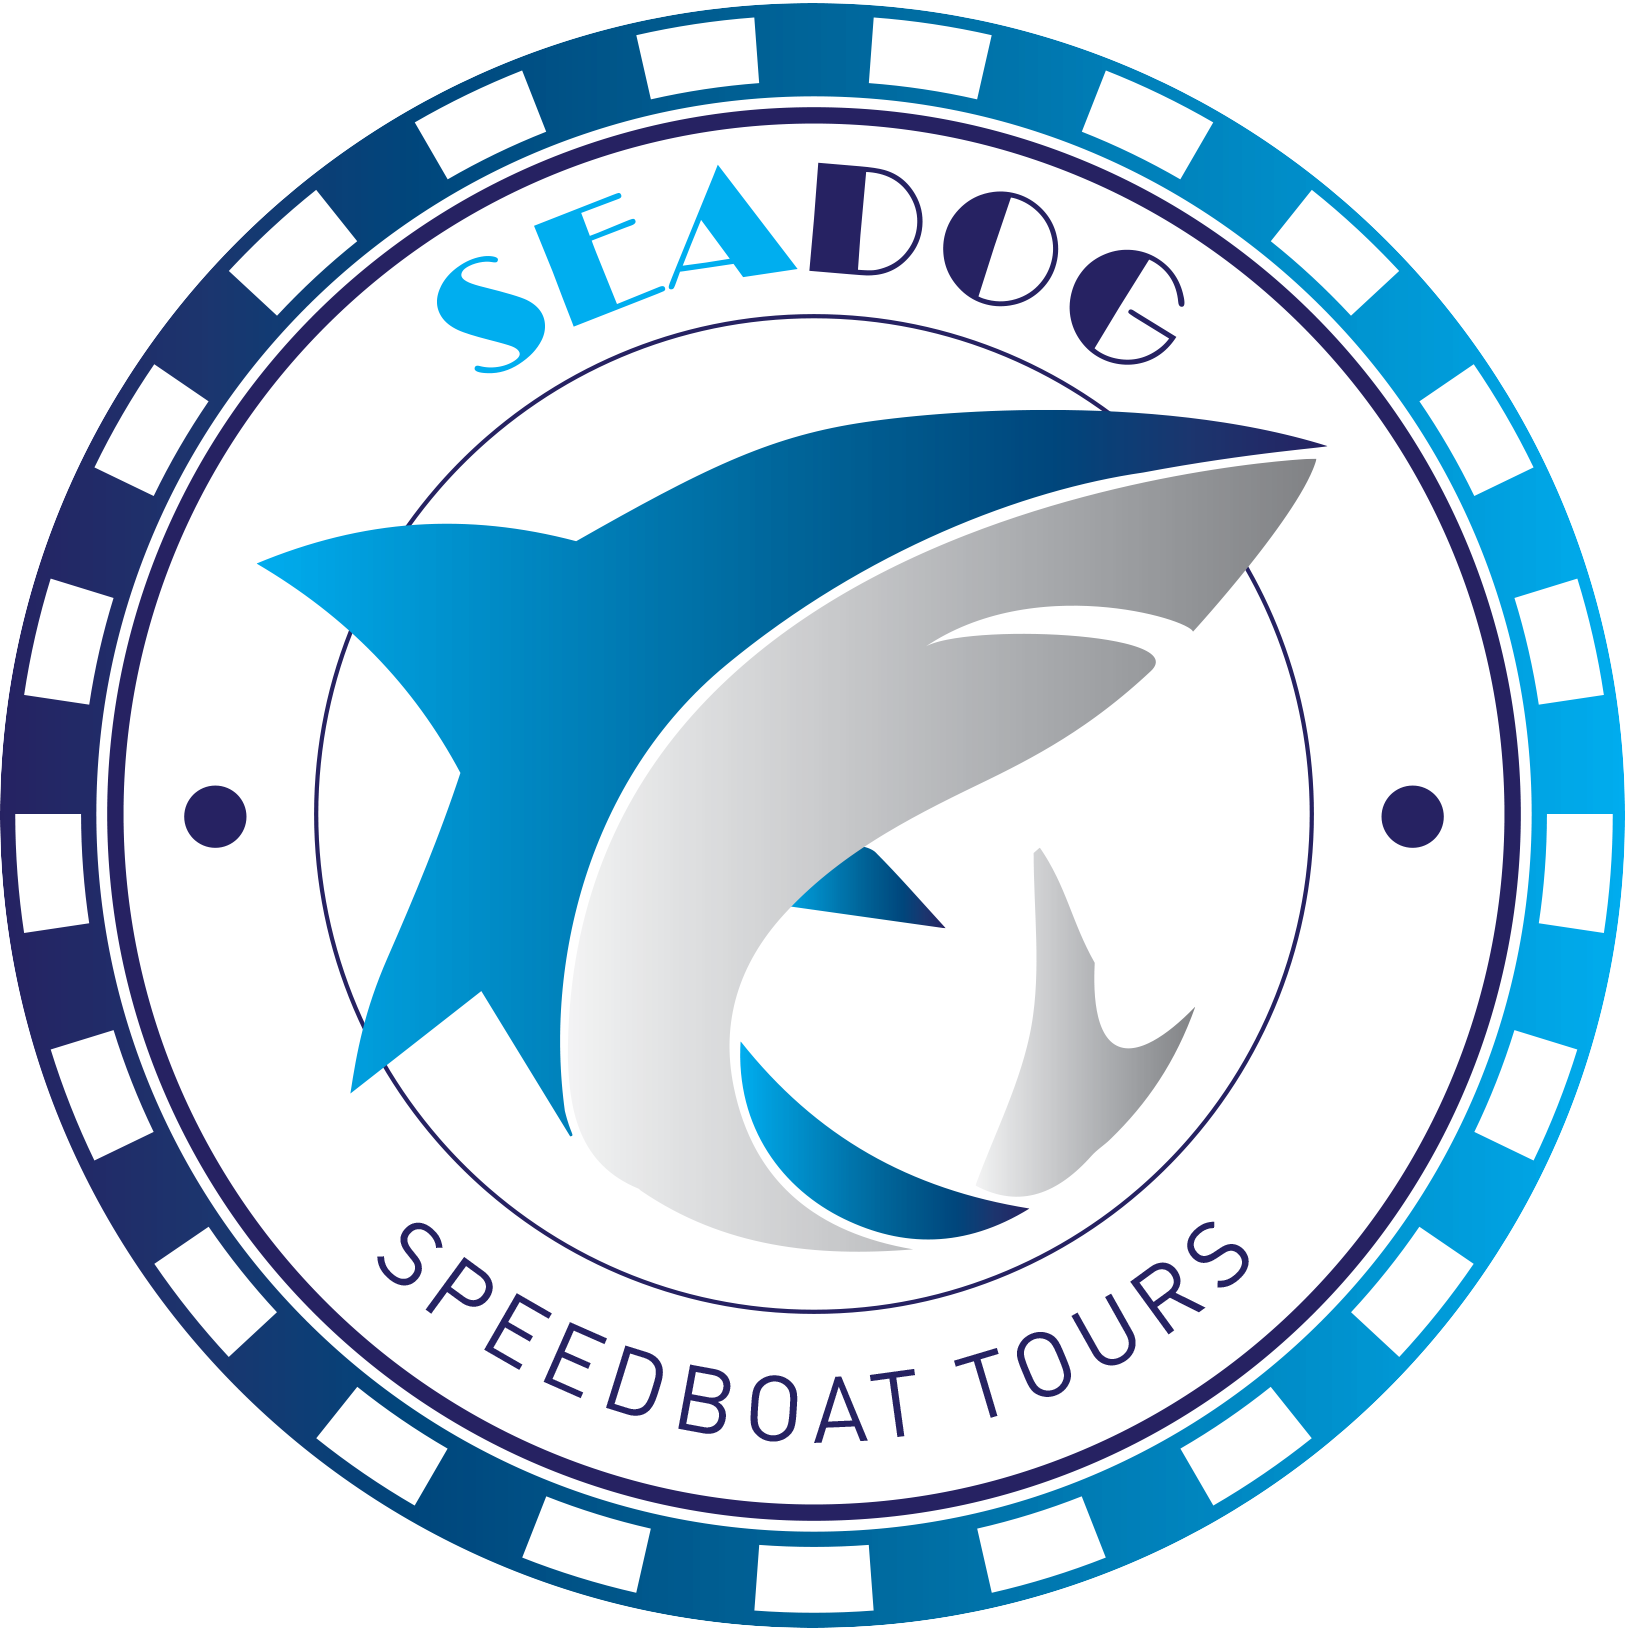 Sea Dog Logo